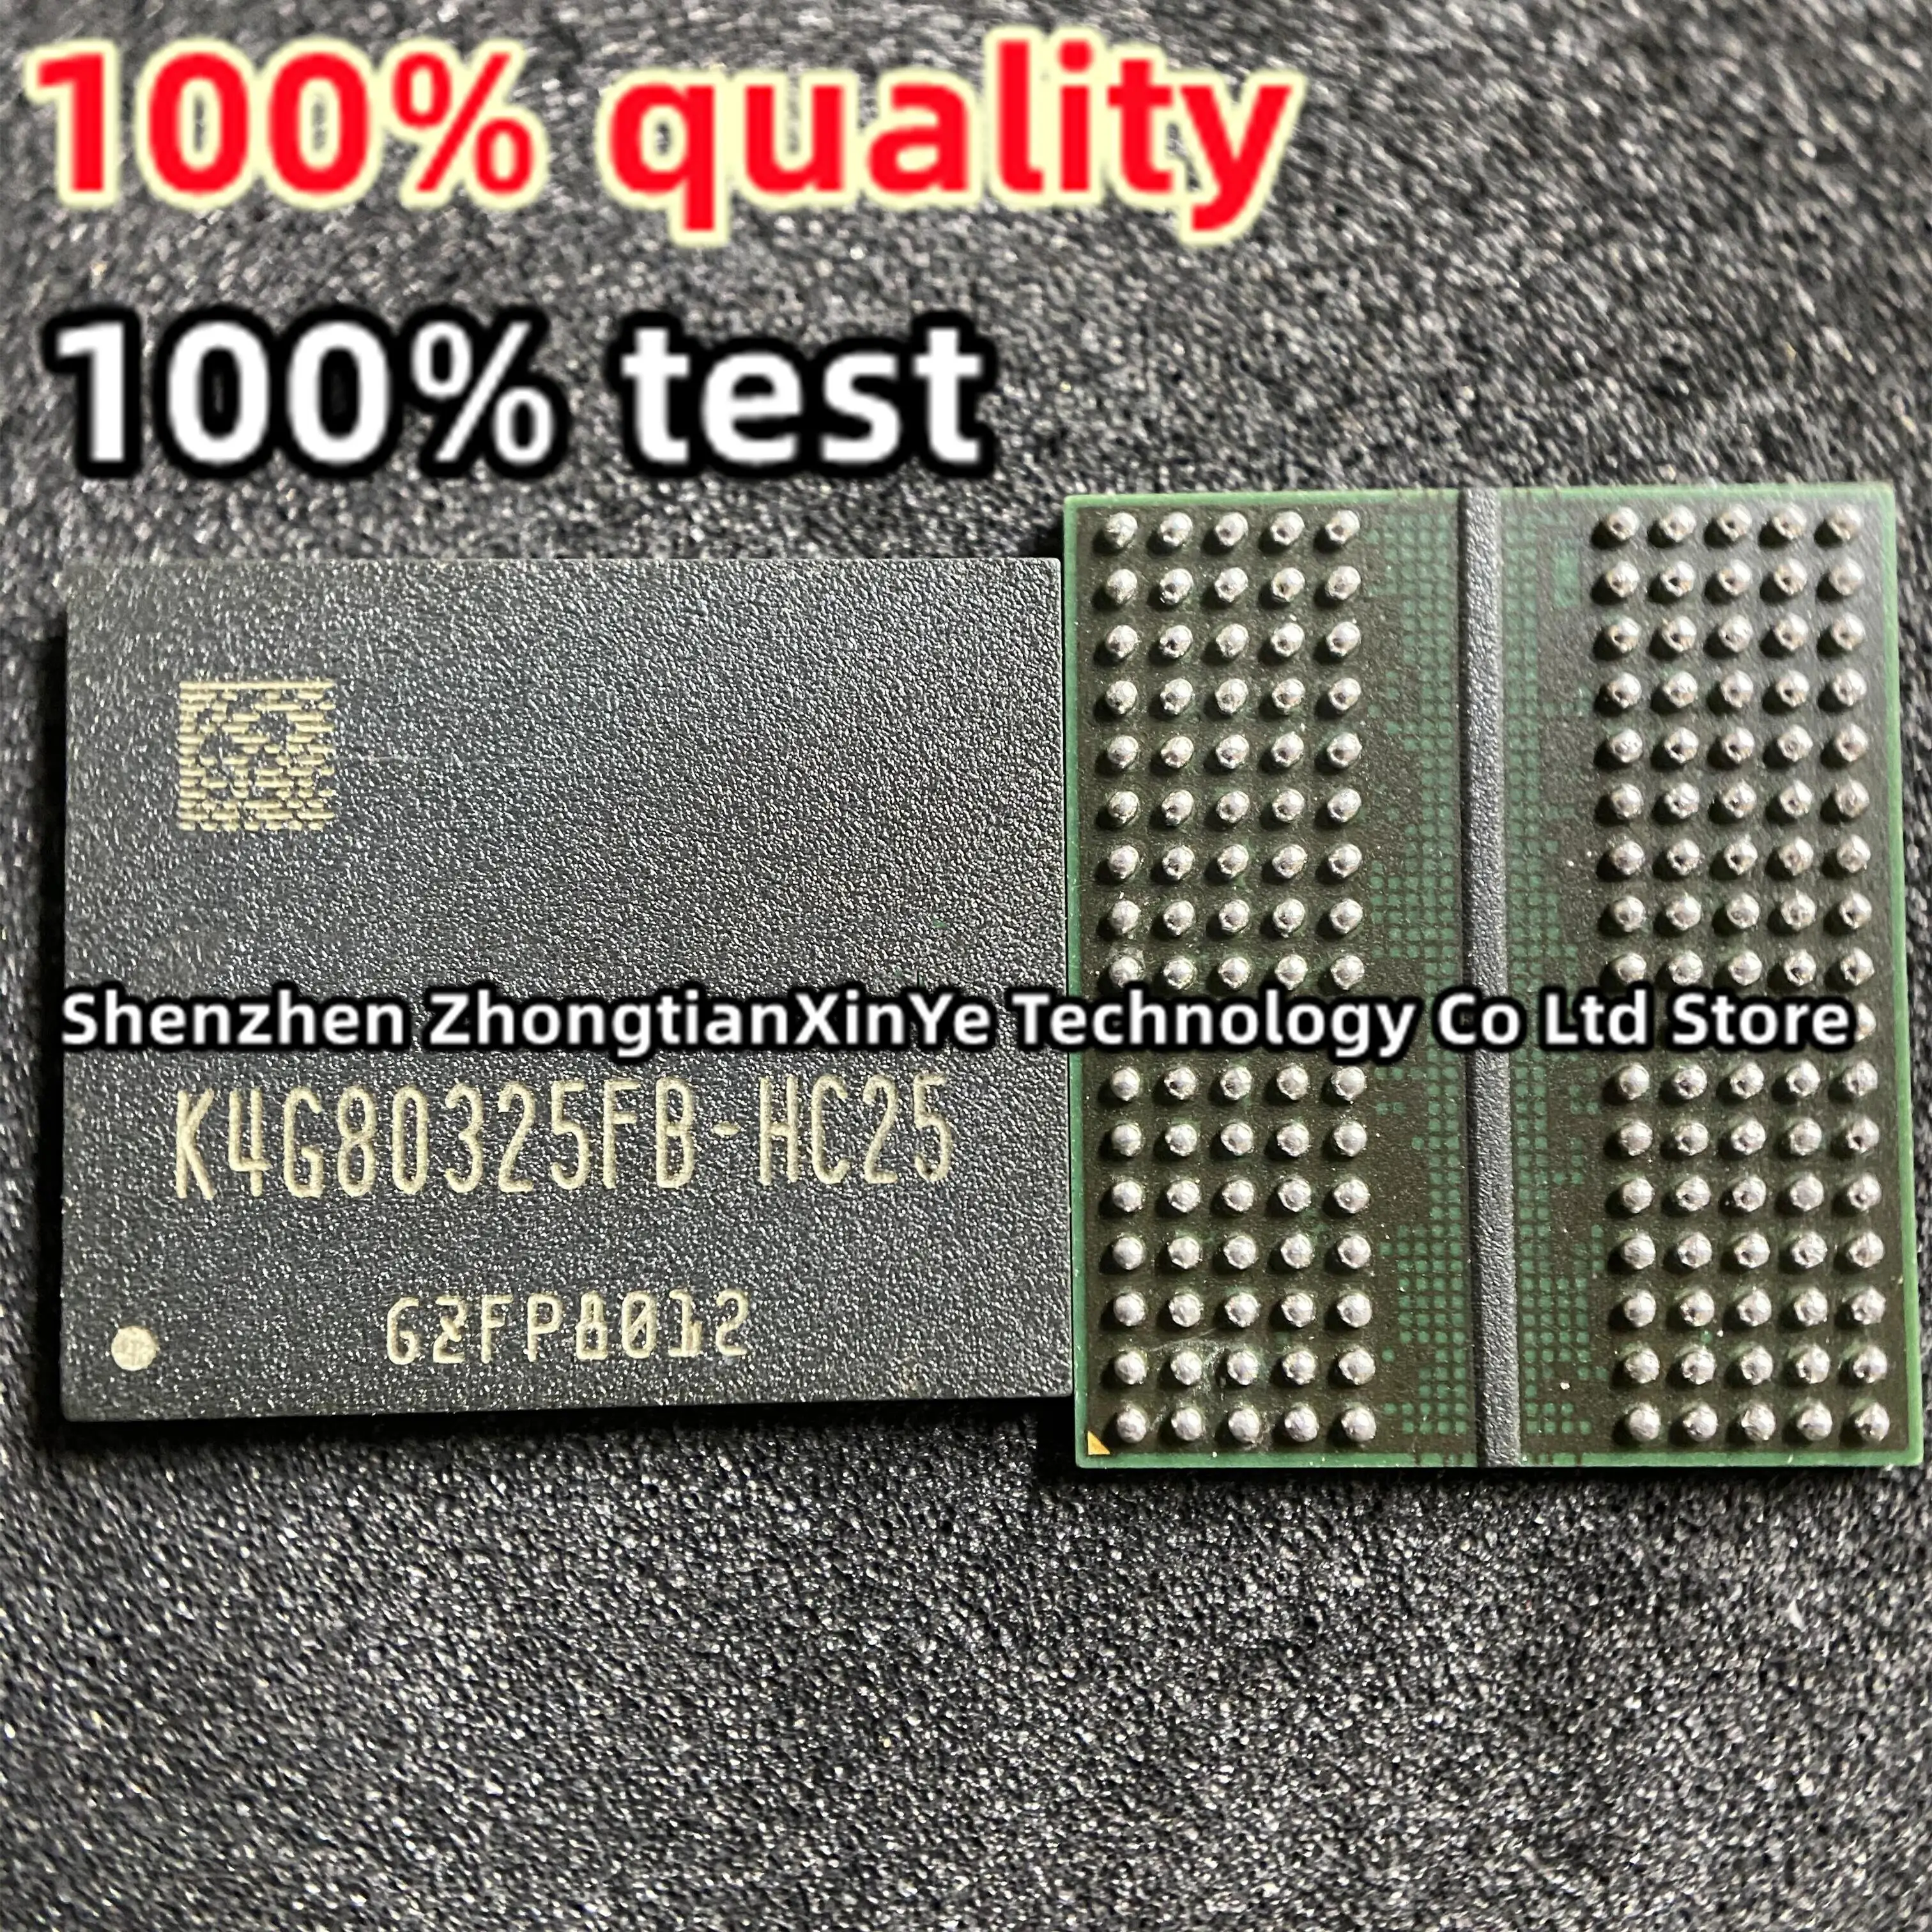 (10piece)100% test K4G80325FC-HC25 K4G80325FB-HC22 H5GQ8H24AJR-R2C H5GQ8H24MJR-T2C D9TCB D9VVR D9SXD D9SXC test  BGA Chipset